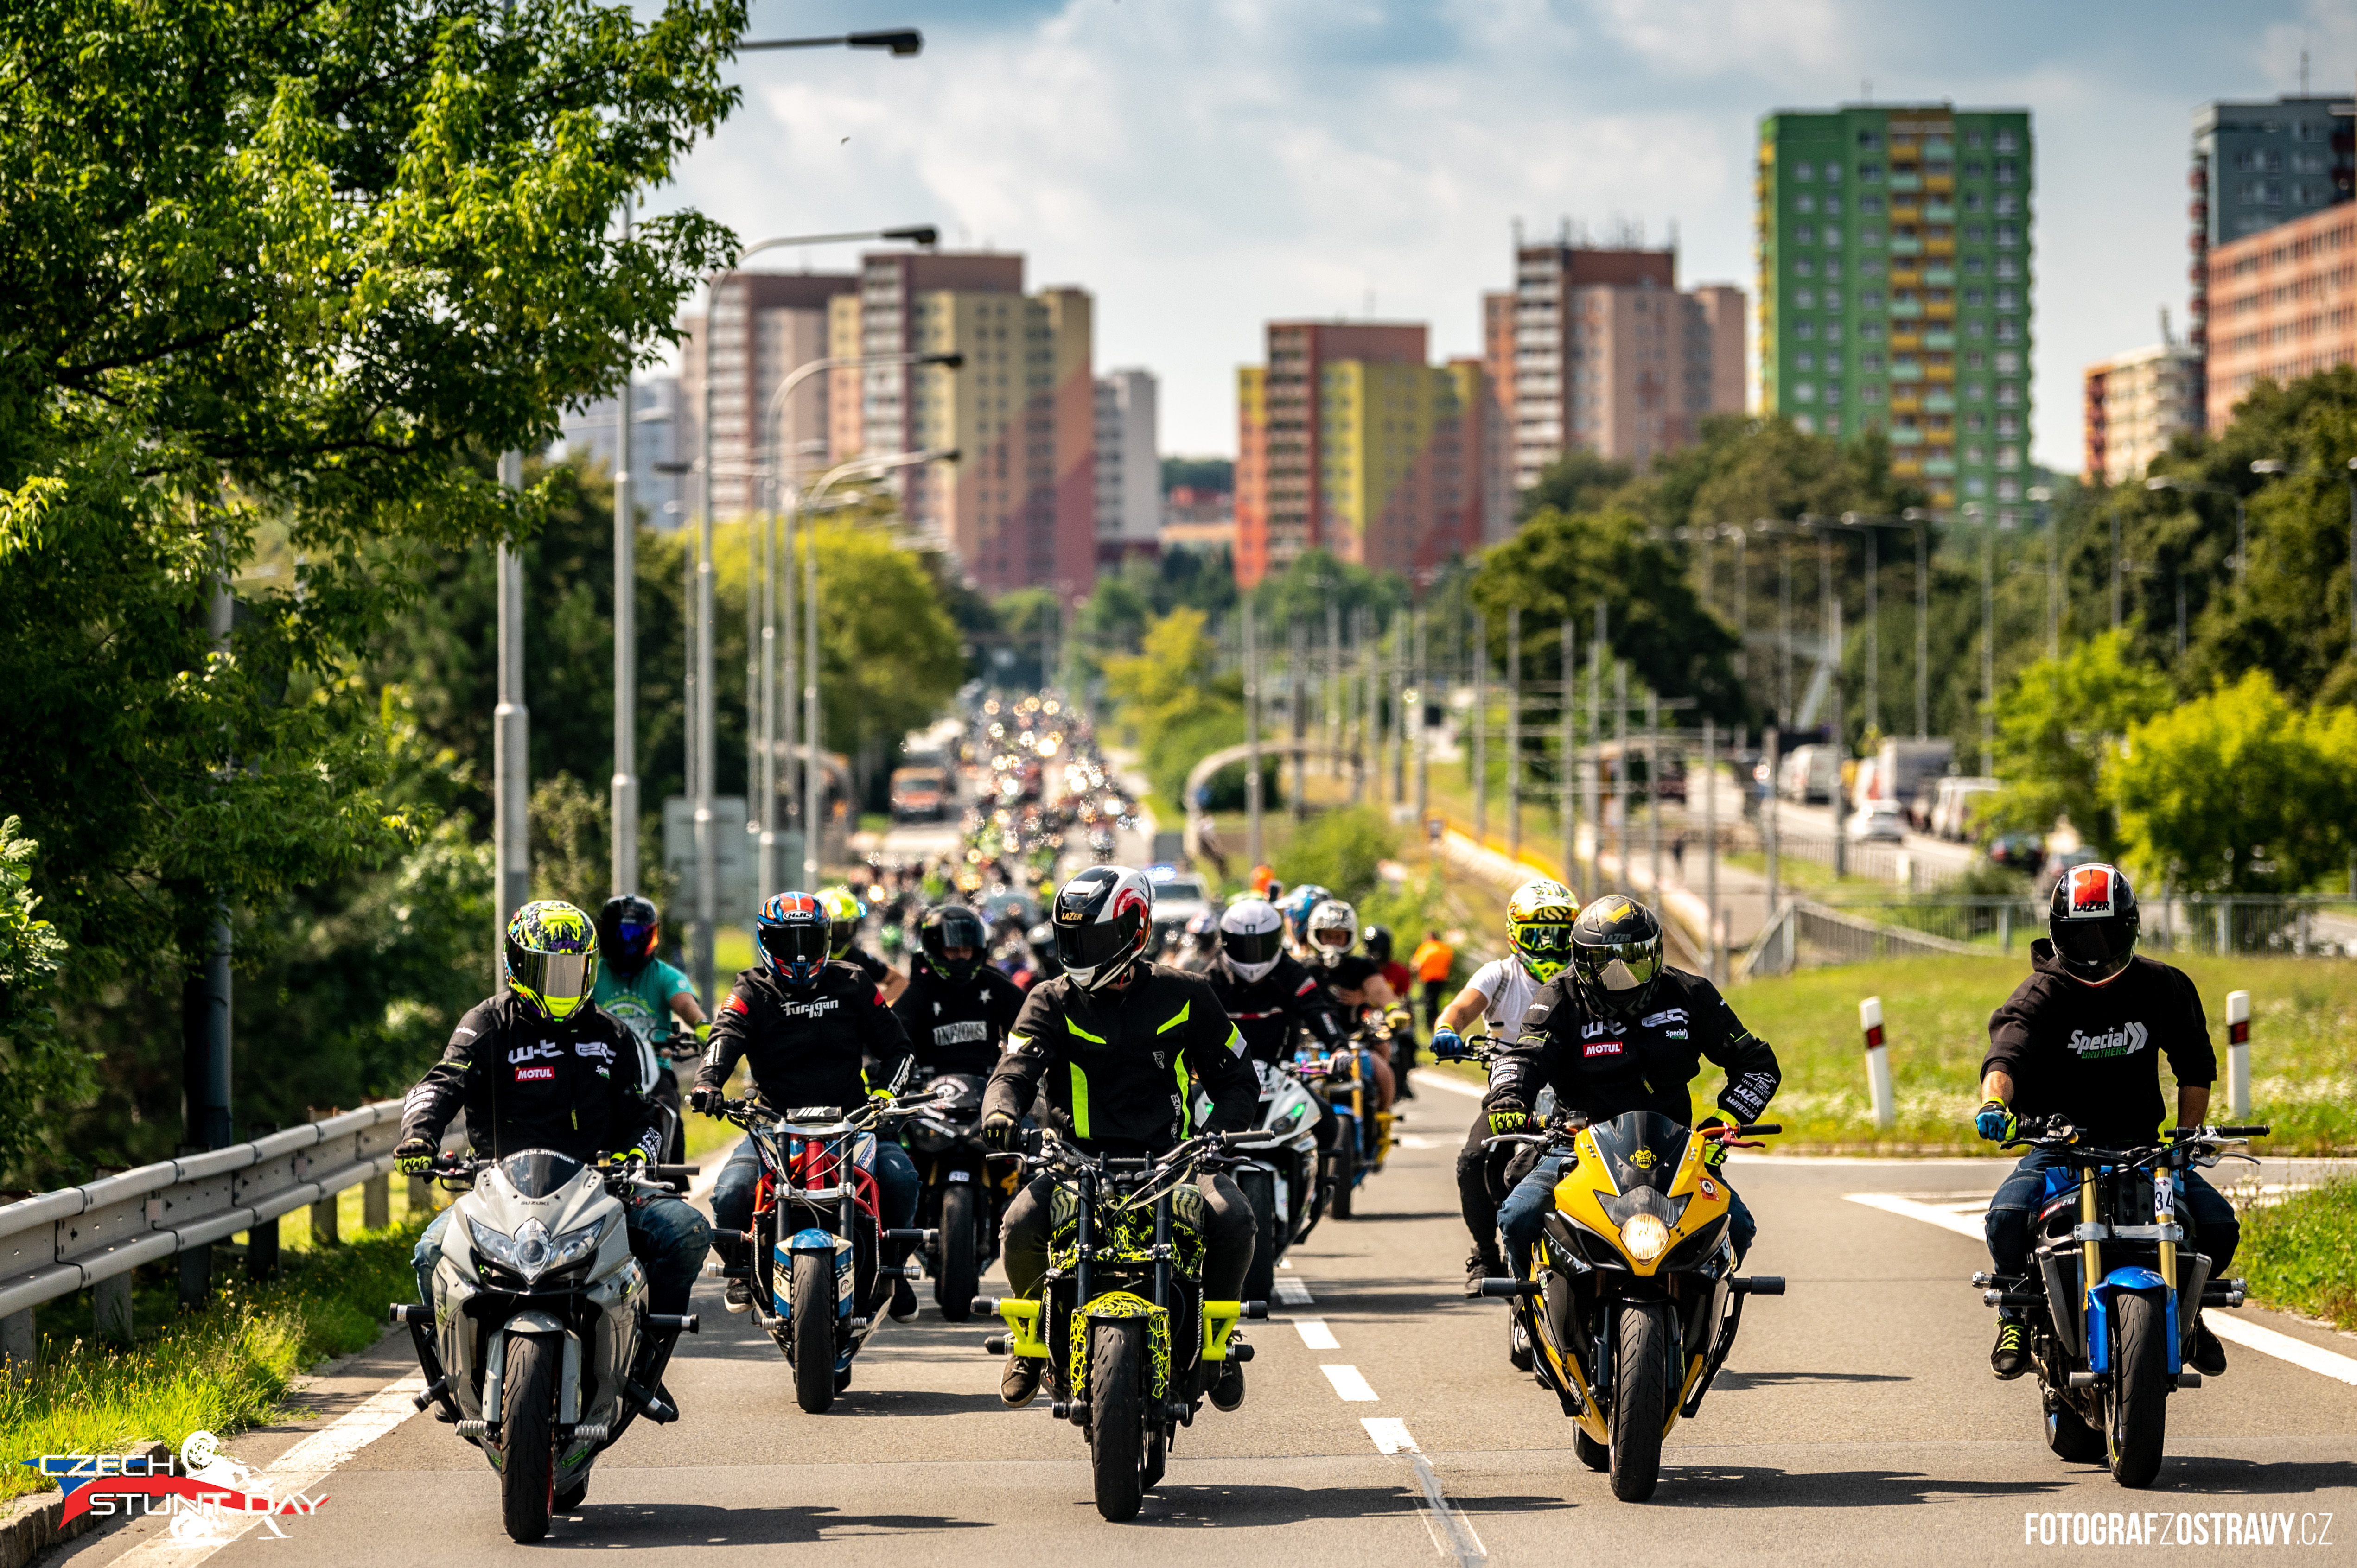 <p>Výroční 10. ročník Czech Stunt Days se blíží a snimi i naše Legenární spanilá jízda Ostravou! Nenechte si ujít největší vyjížďku v našem kraji 😎 Překonáme společně rekord s největším počtem motorkářů z roku 2019? Tehdy nás bylo celých 790 motorkářů! Pro více informací sledujte nás Facebook ‼</p>
